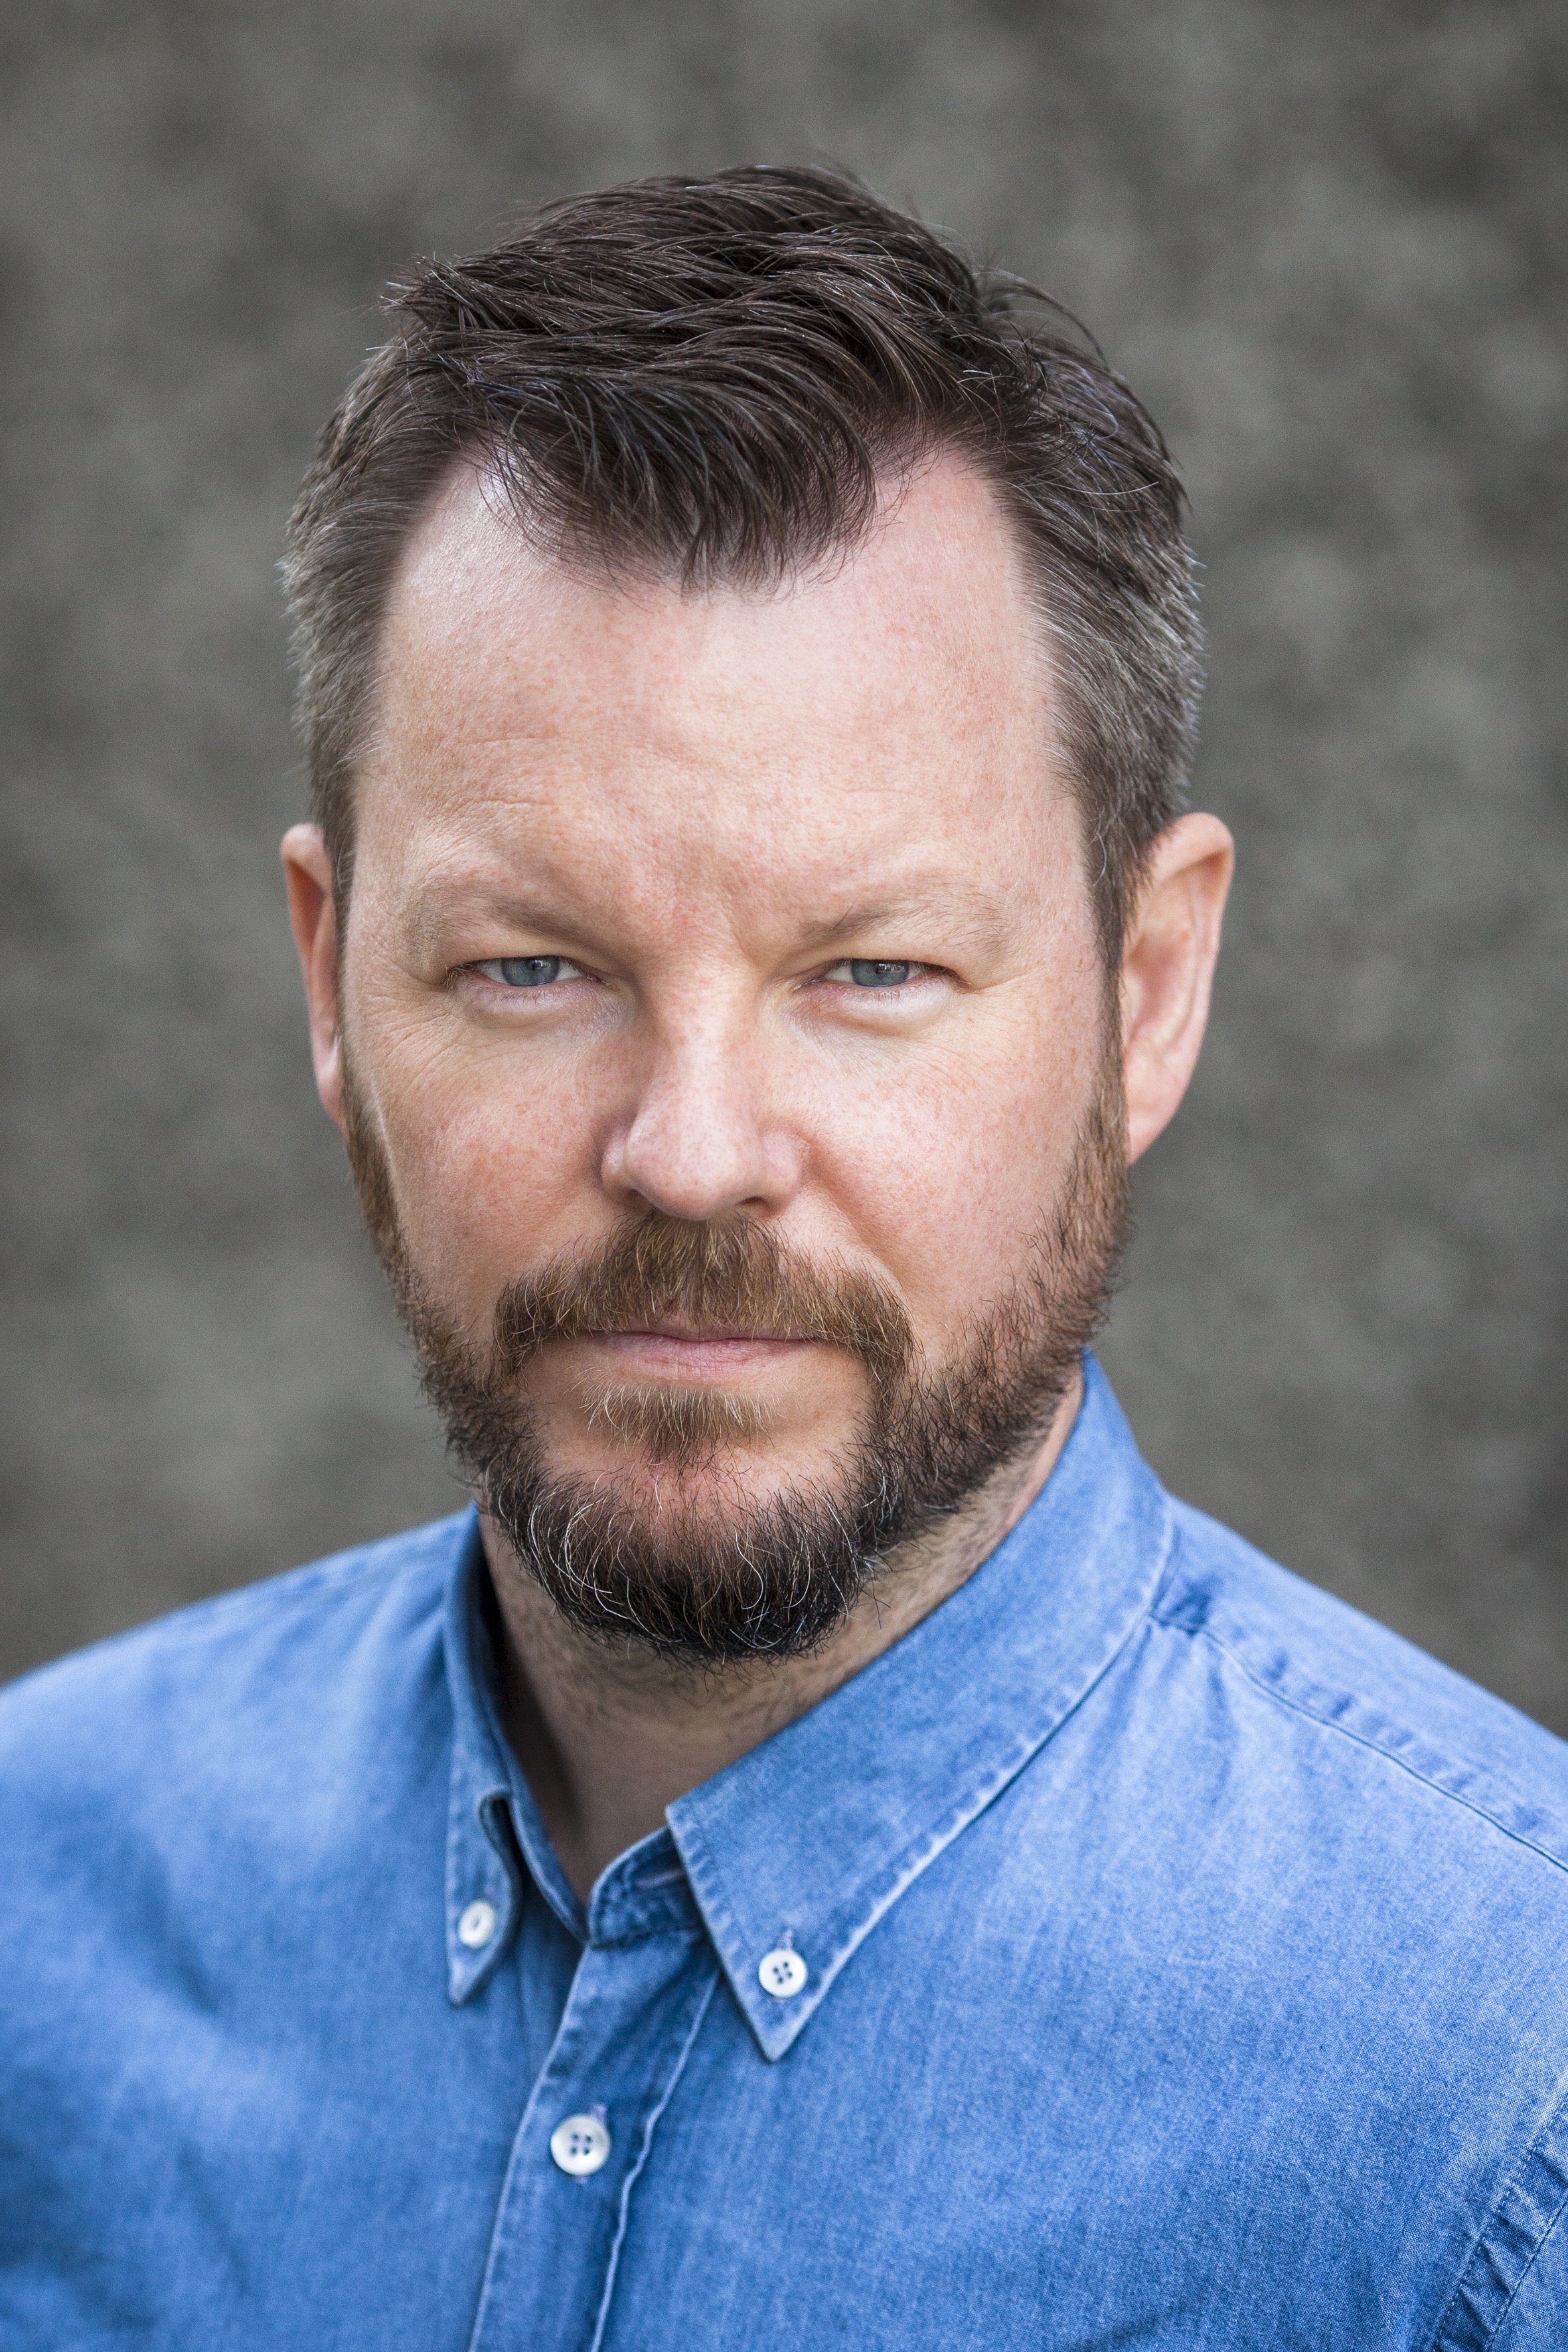 Gunnar Hansson portrait photo in color (May, 2015)